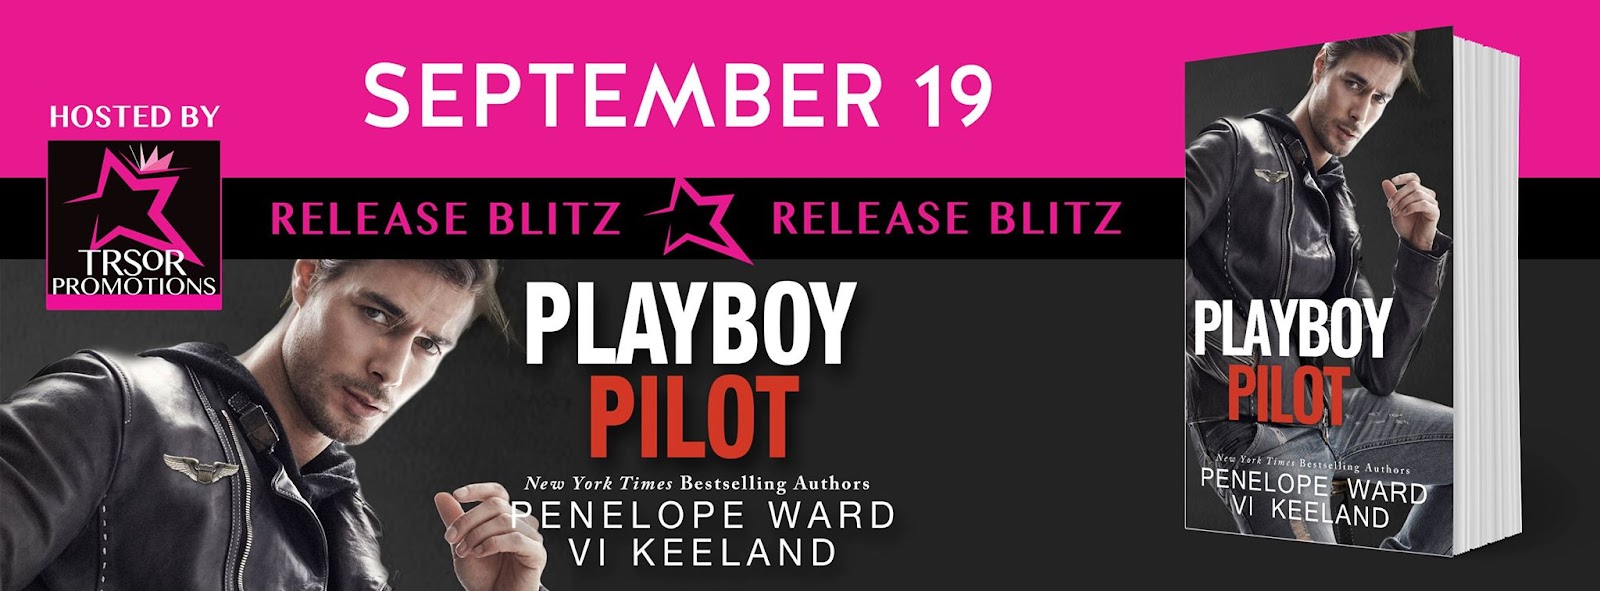 playboy pilot release blitz.jpg